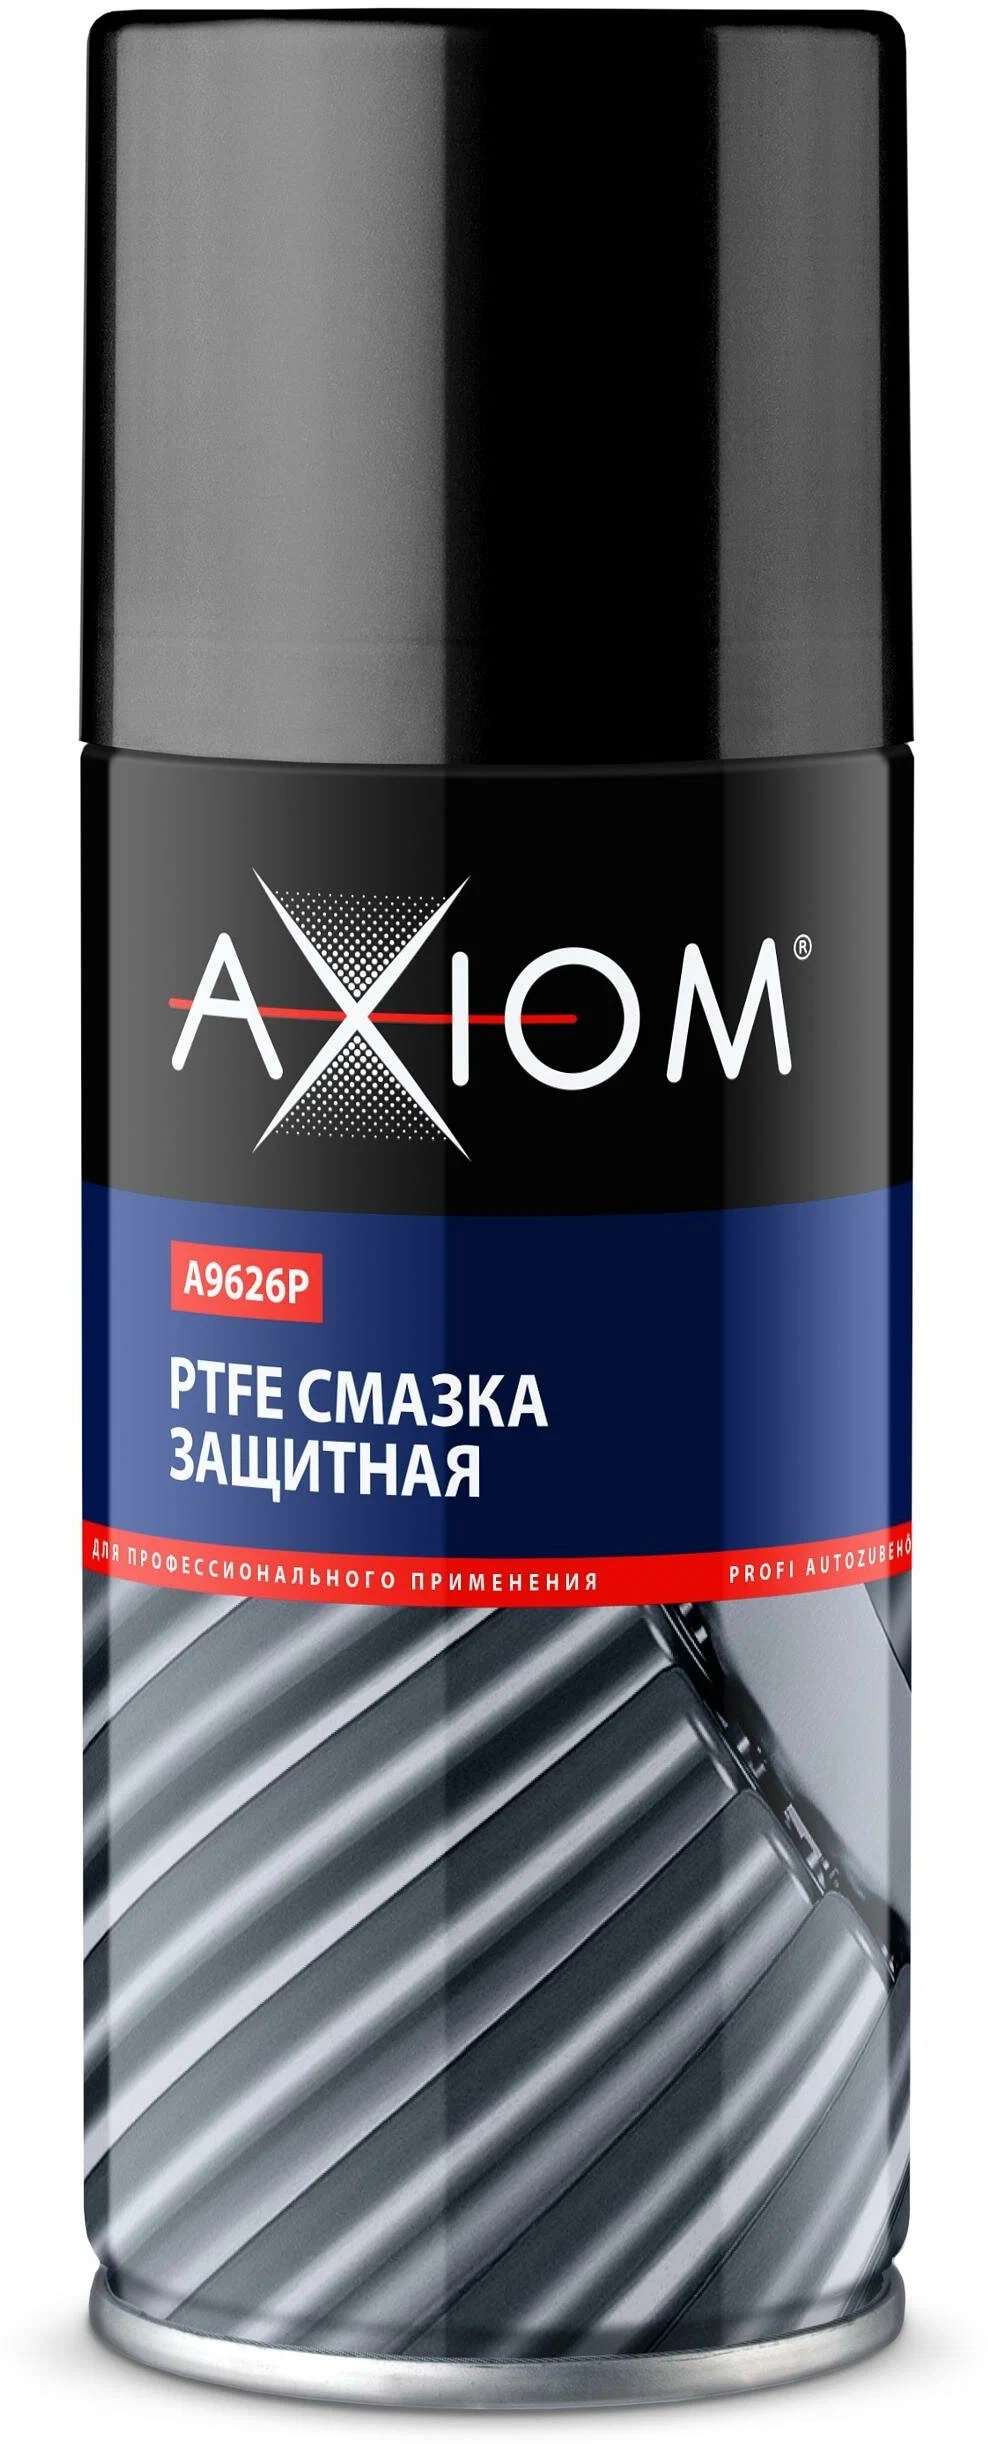 Axiom Ptfe A9626p